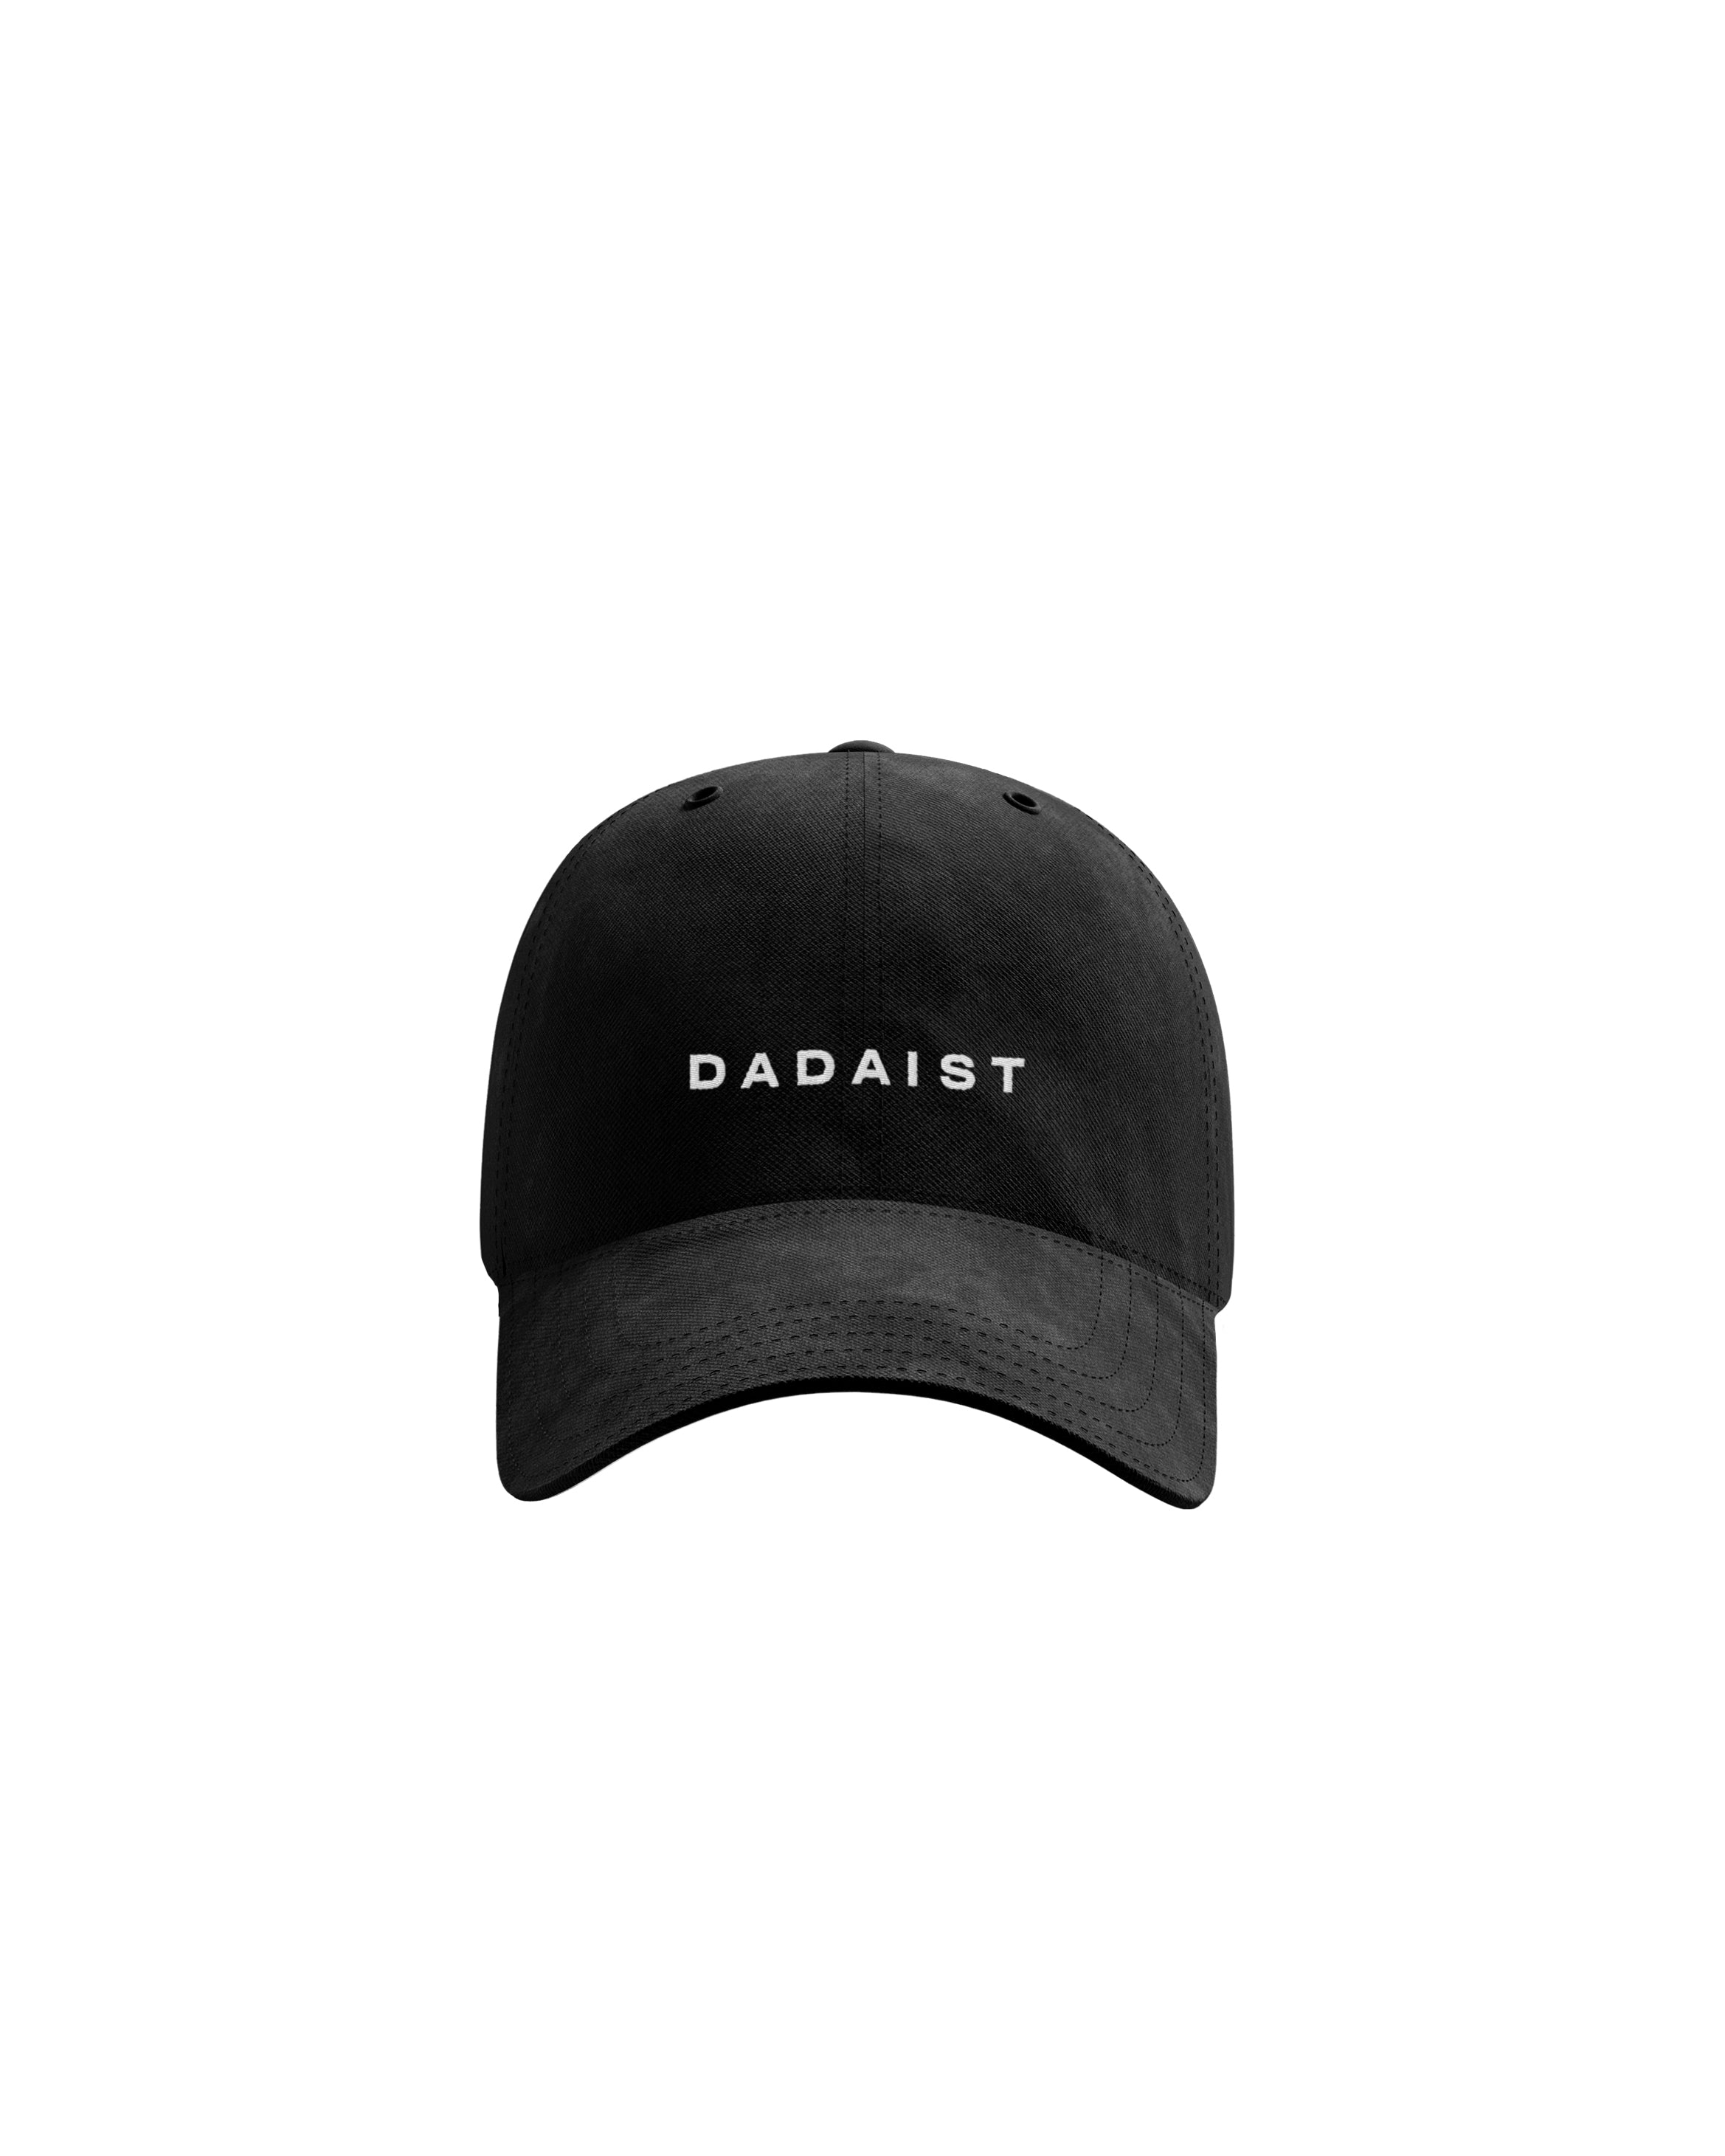 Dadaist Dad Hat